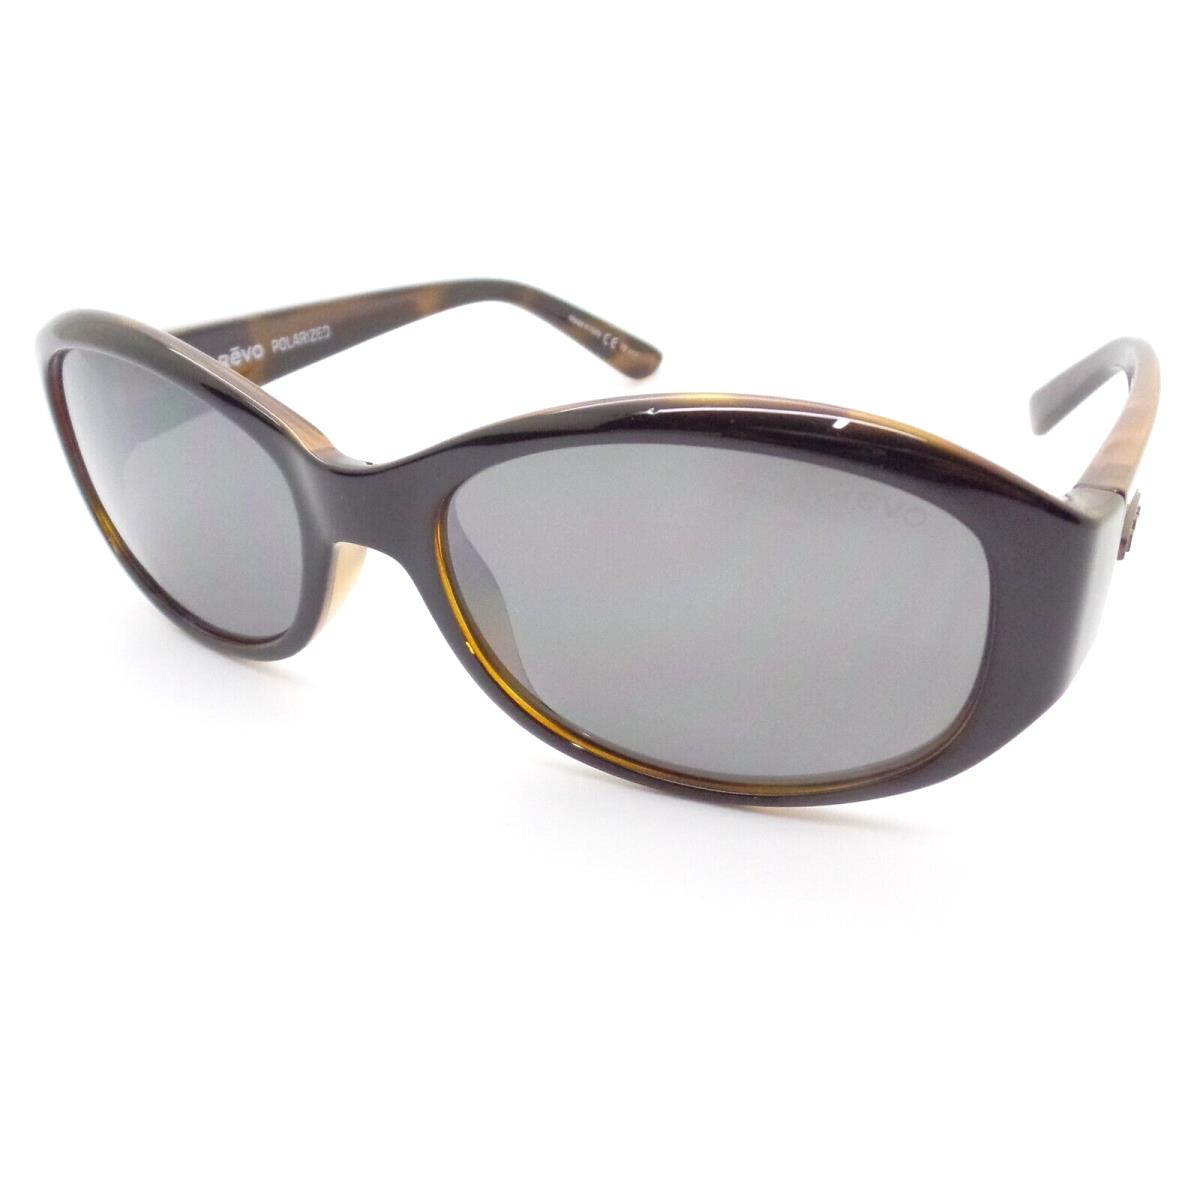 Revo sunglasses  - Black Honey Tort Frame, Graphite Lens 0